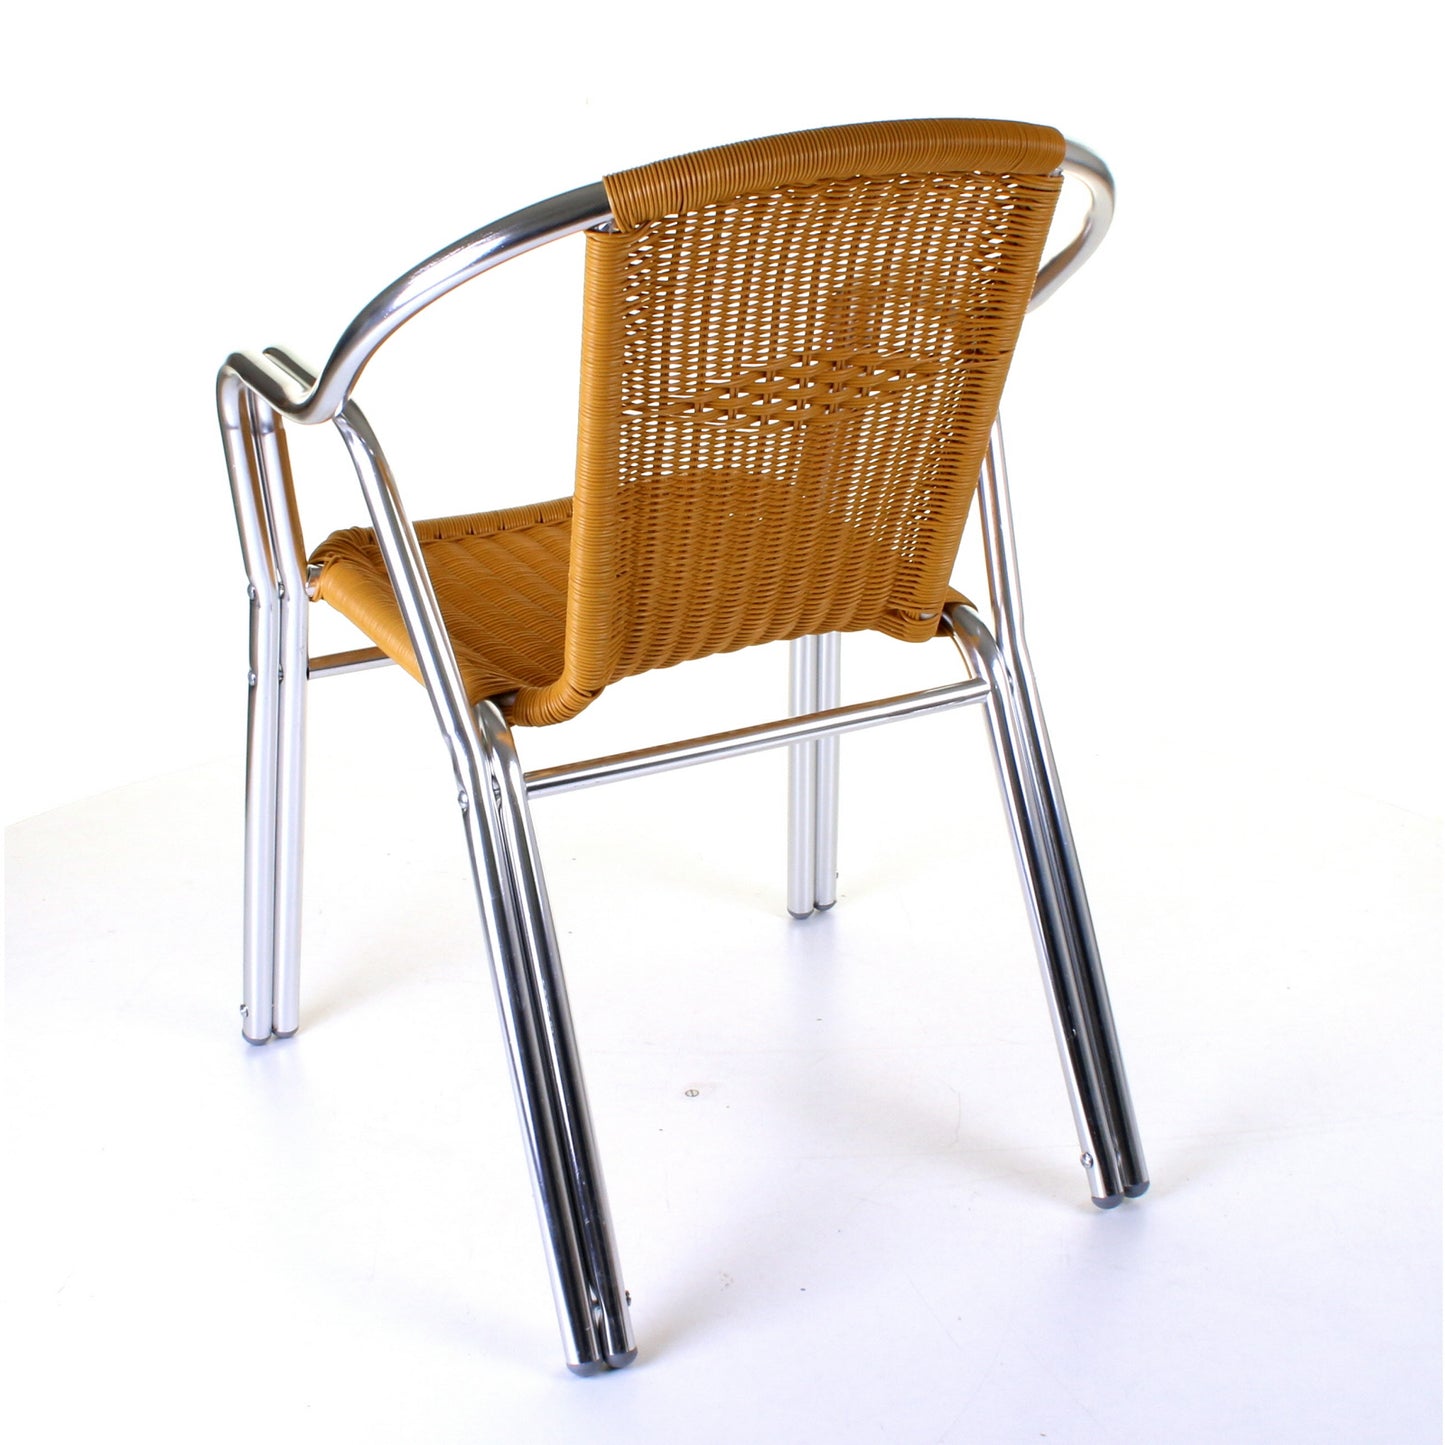 Cabarete Bistro Chair - Tan Wicker